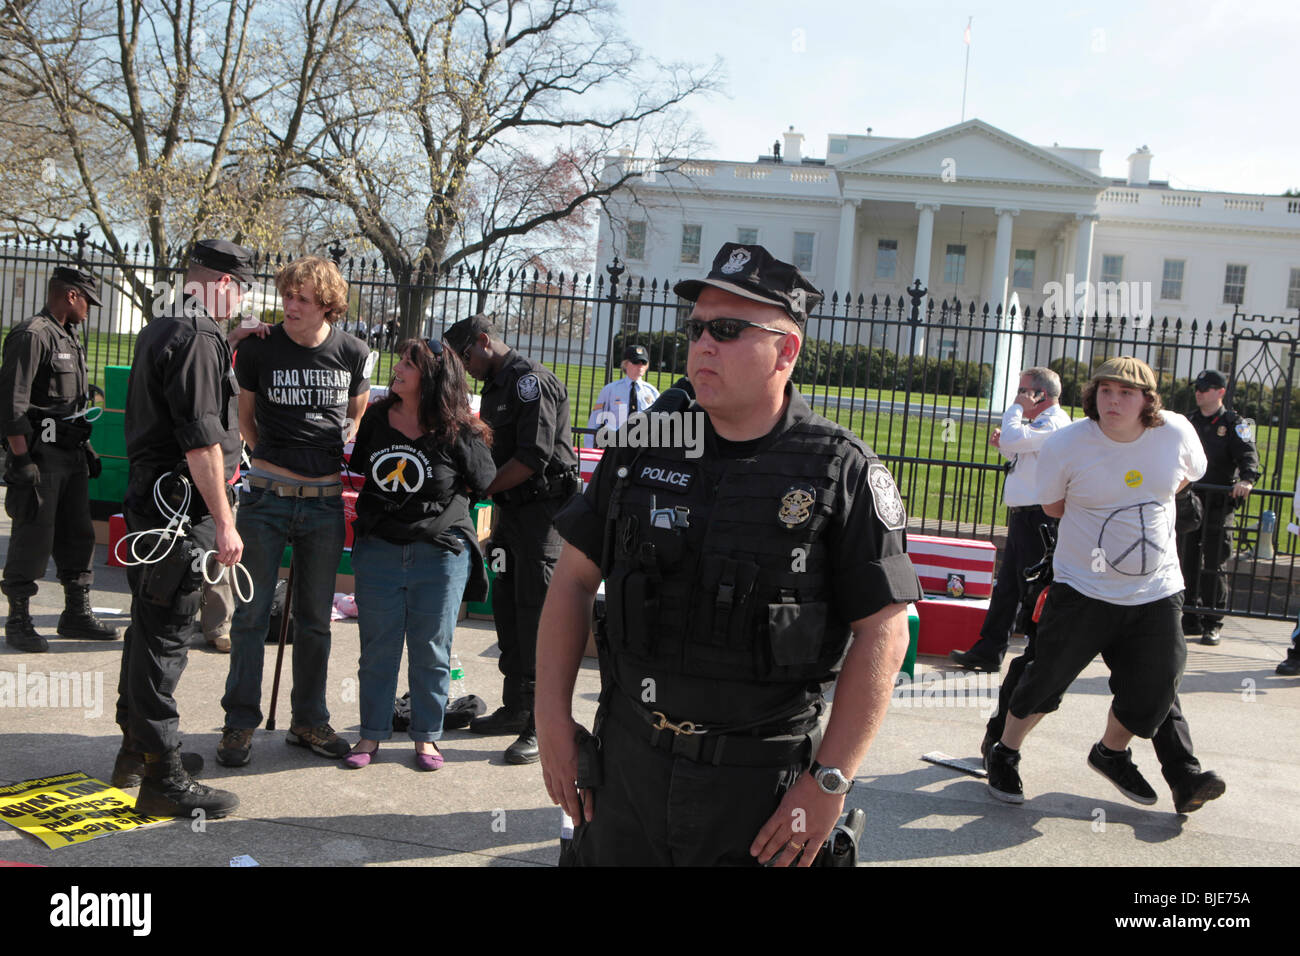 La guerre contre les manifestants sont arrêtés par la police près de Maison Blanche. Manifestation anti-guerre. Marche sur Washington. 20 mars, 2010 Banque D'Images